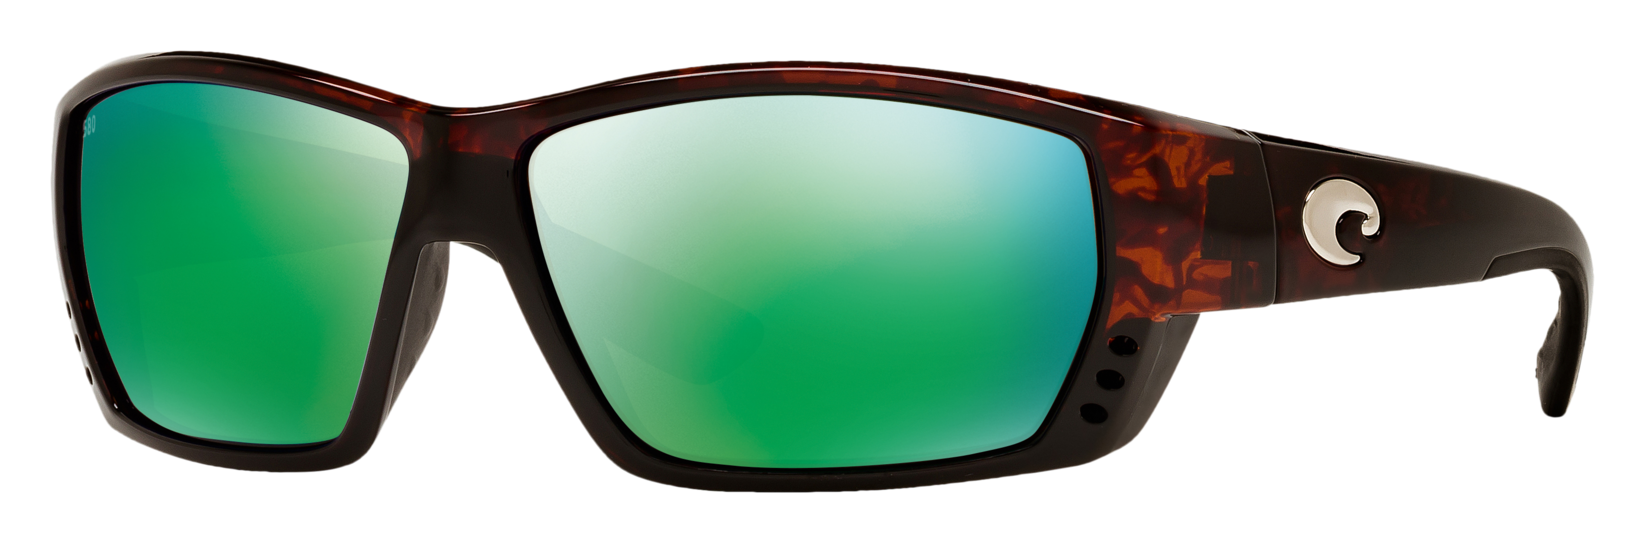 Costa Del Mar Tuna Alley 580G Glass Polarized Sunglasses - Tortoise/Green Mirror - Standard